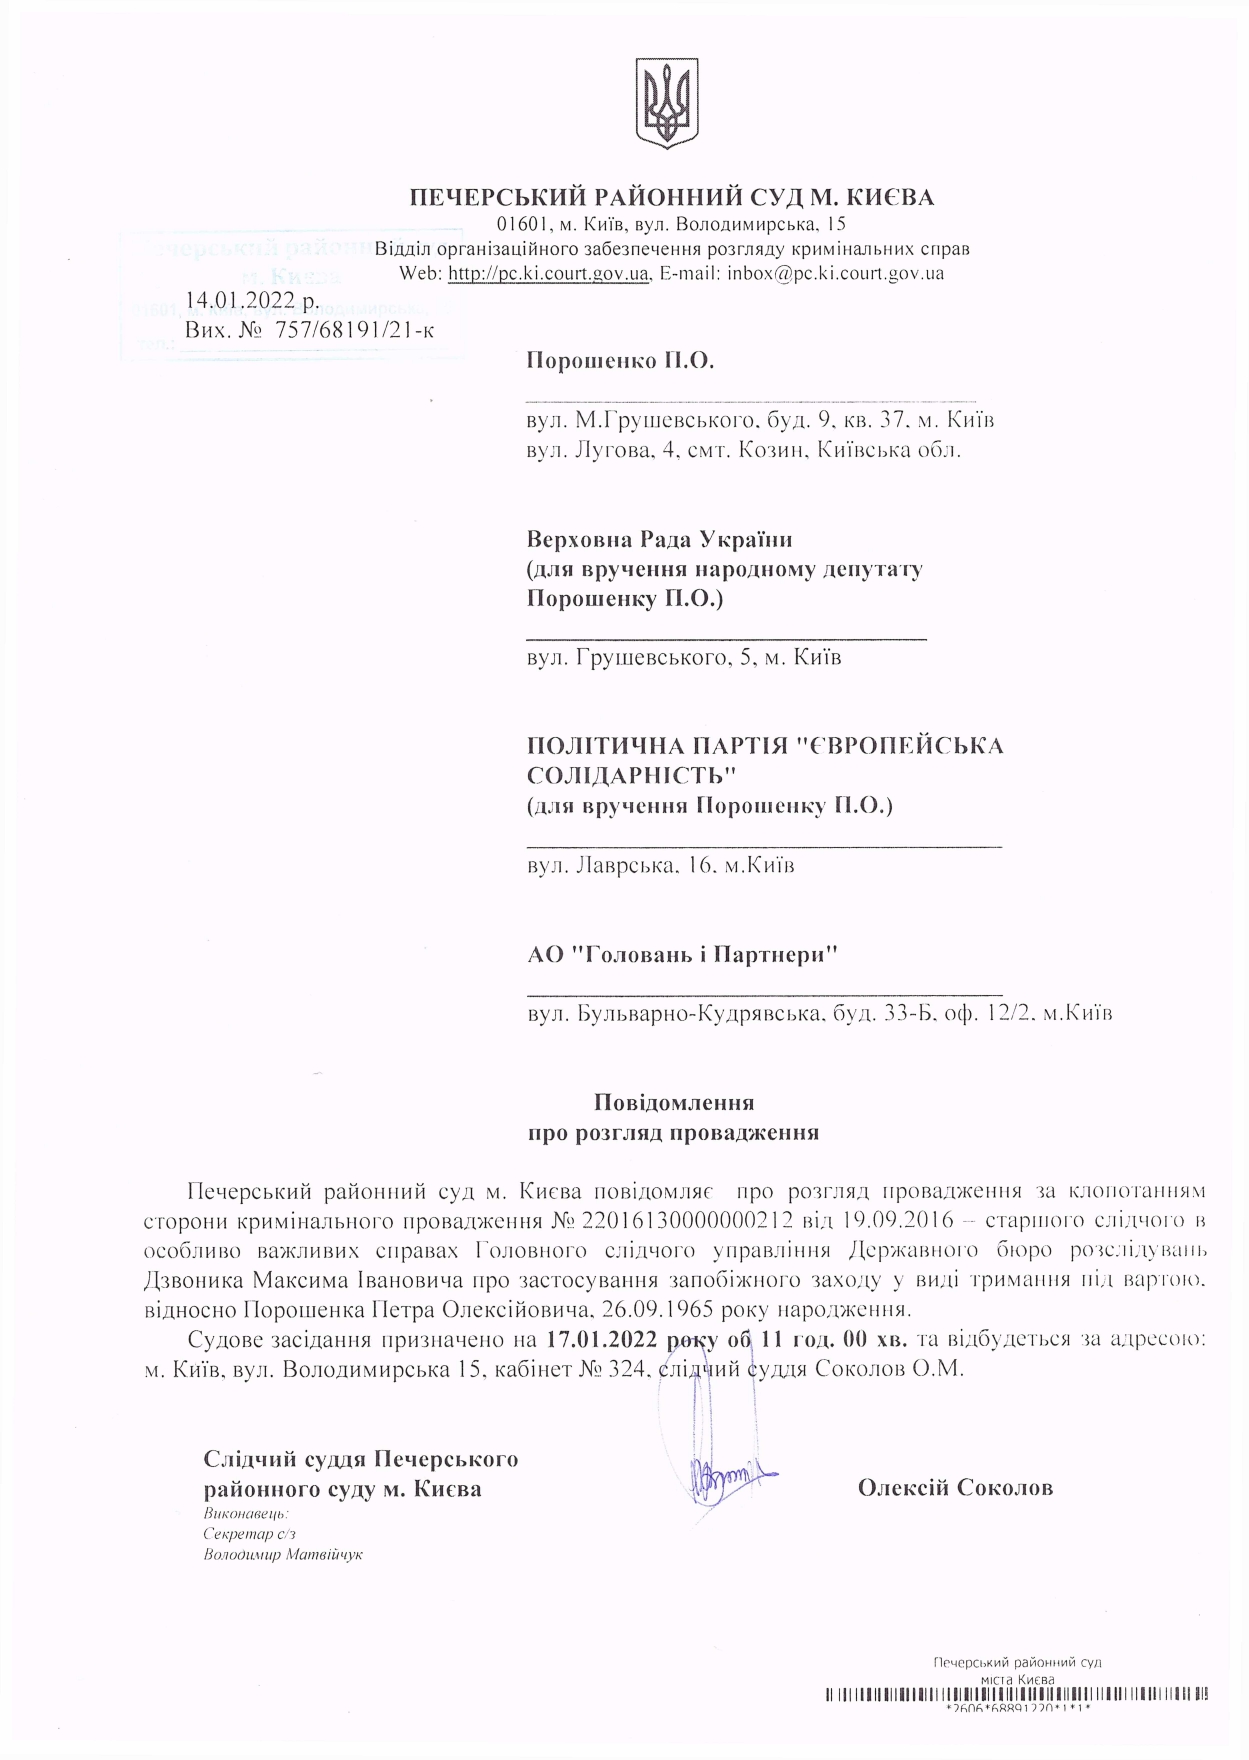 Суд щодо запобіжного заходу для Порошенка призначено на 17 січня, прокурори вимагають арешту – ДБР